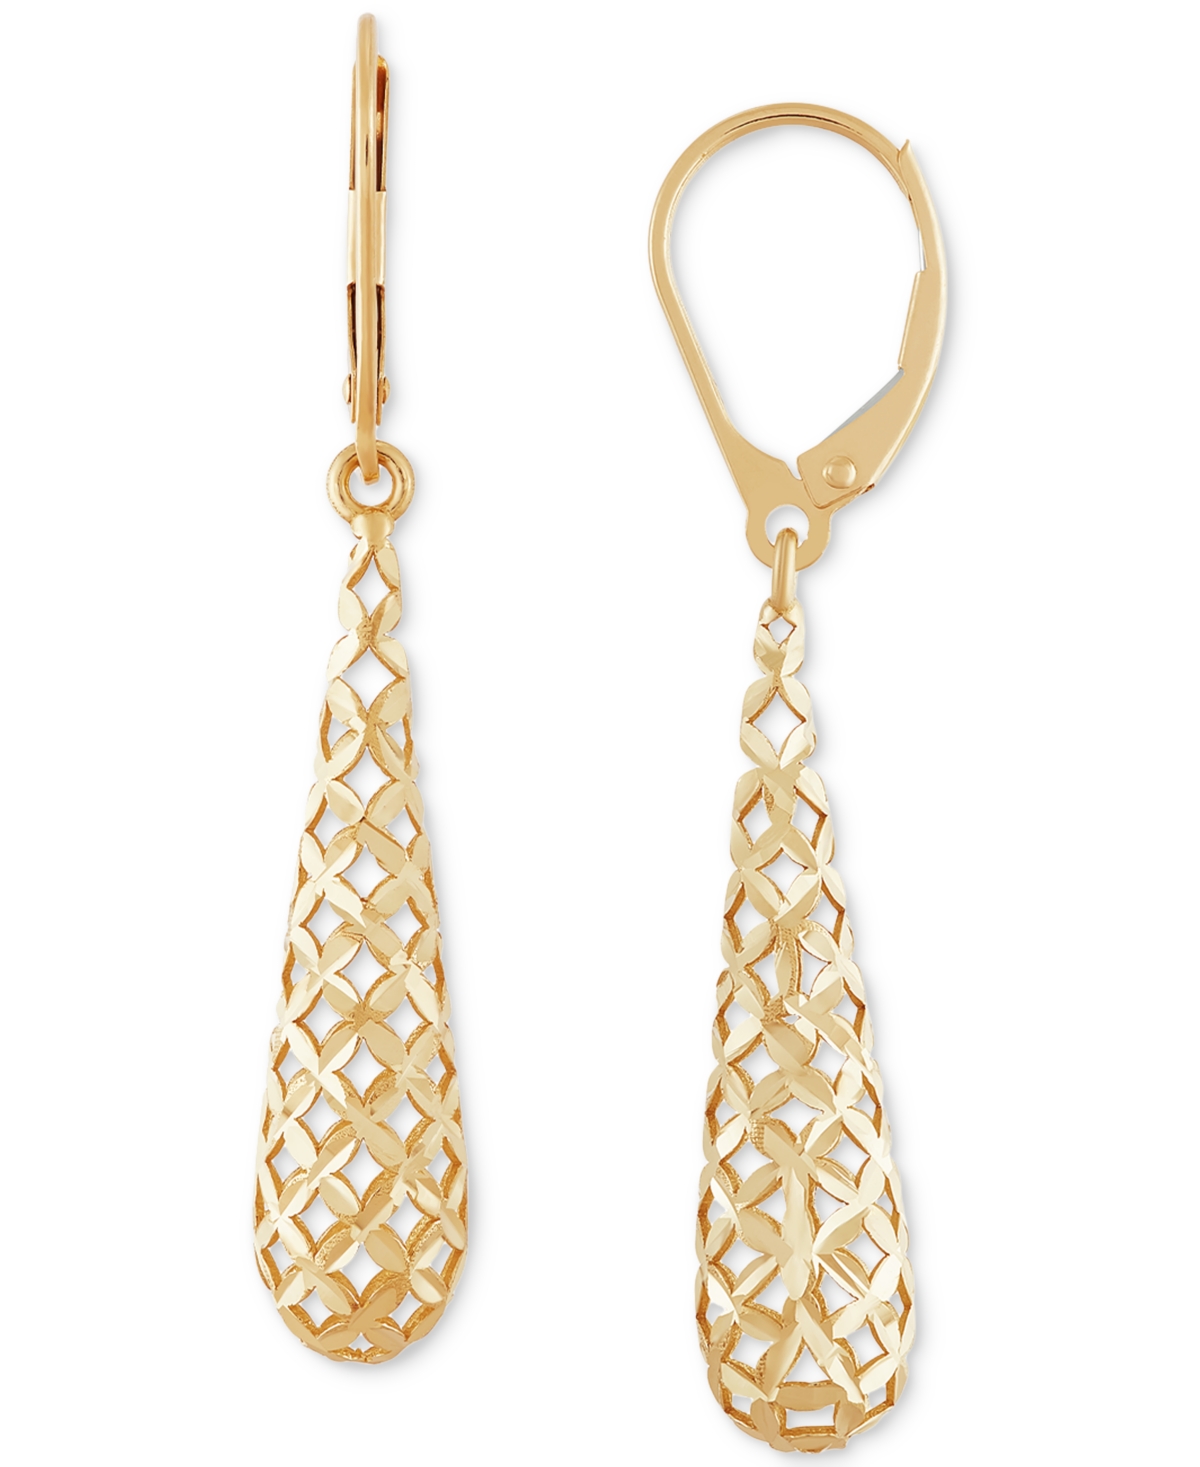 Lattice Work Elongated Teardrop Leverback Drop Earrings in 10k Gold - Gold